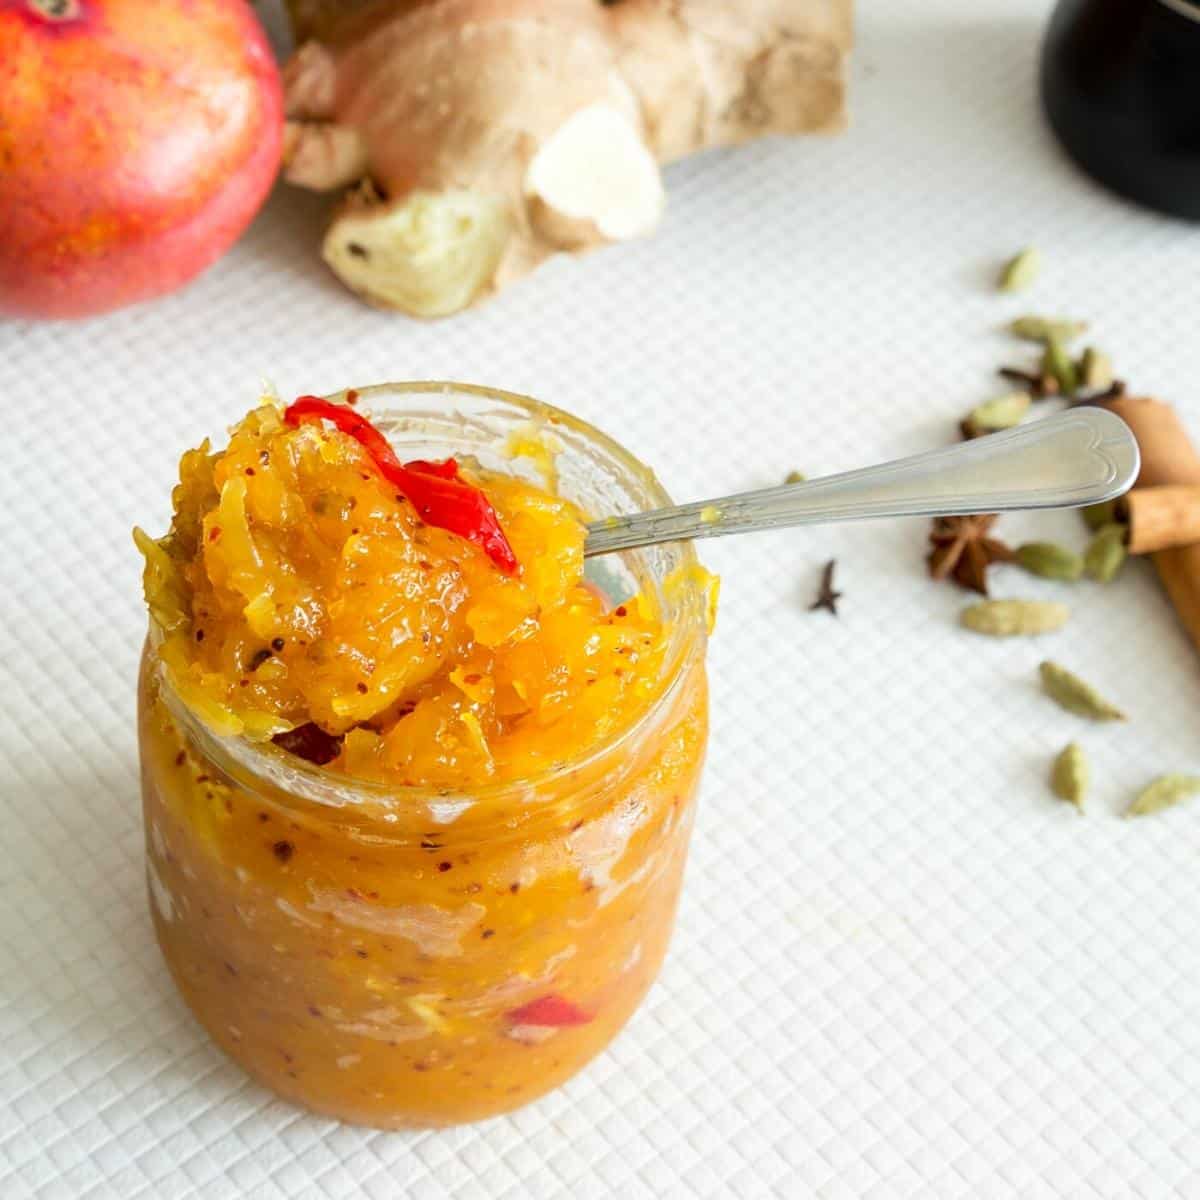 Mango chutney in a spoon and jar.